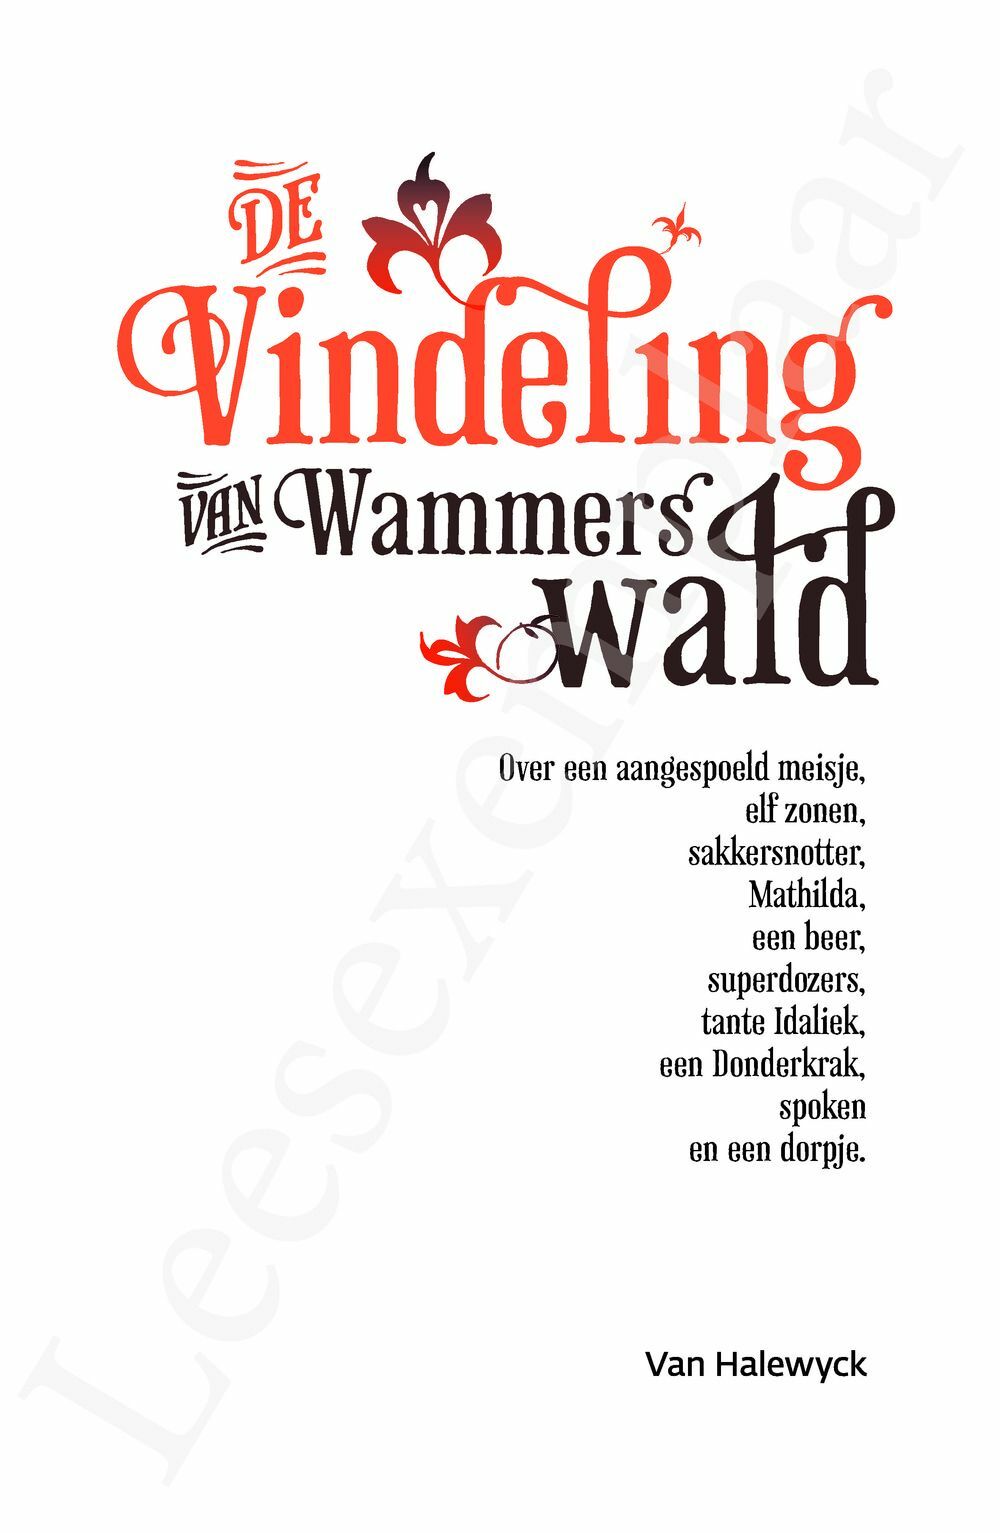 Preview: De Vindeling van Wammerswald